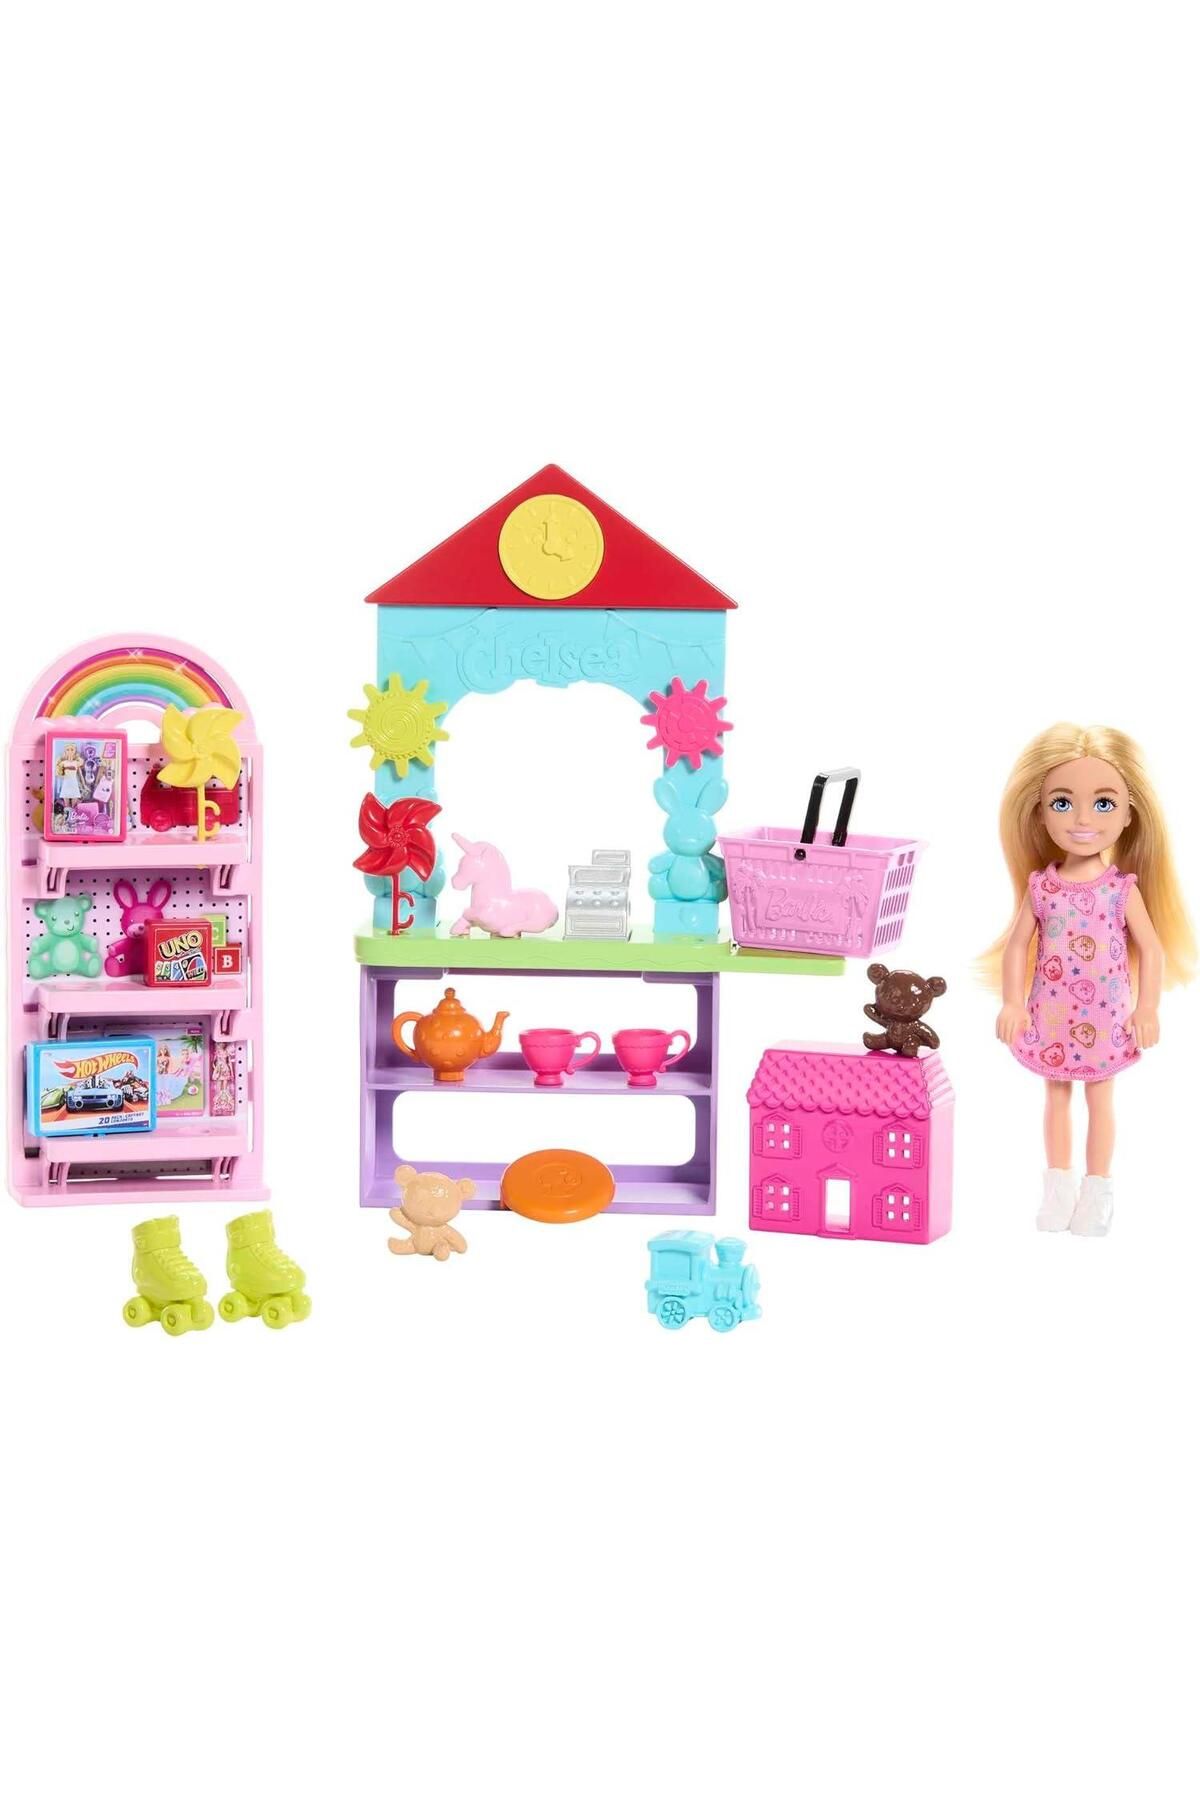 Barbie Chelsea Oyuncak Dükkanı Oyun Seti Hny59